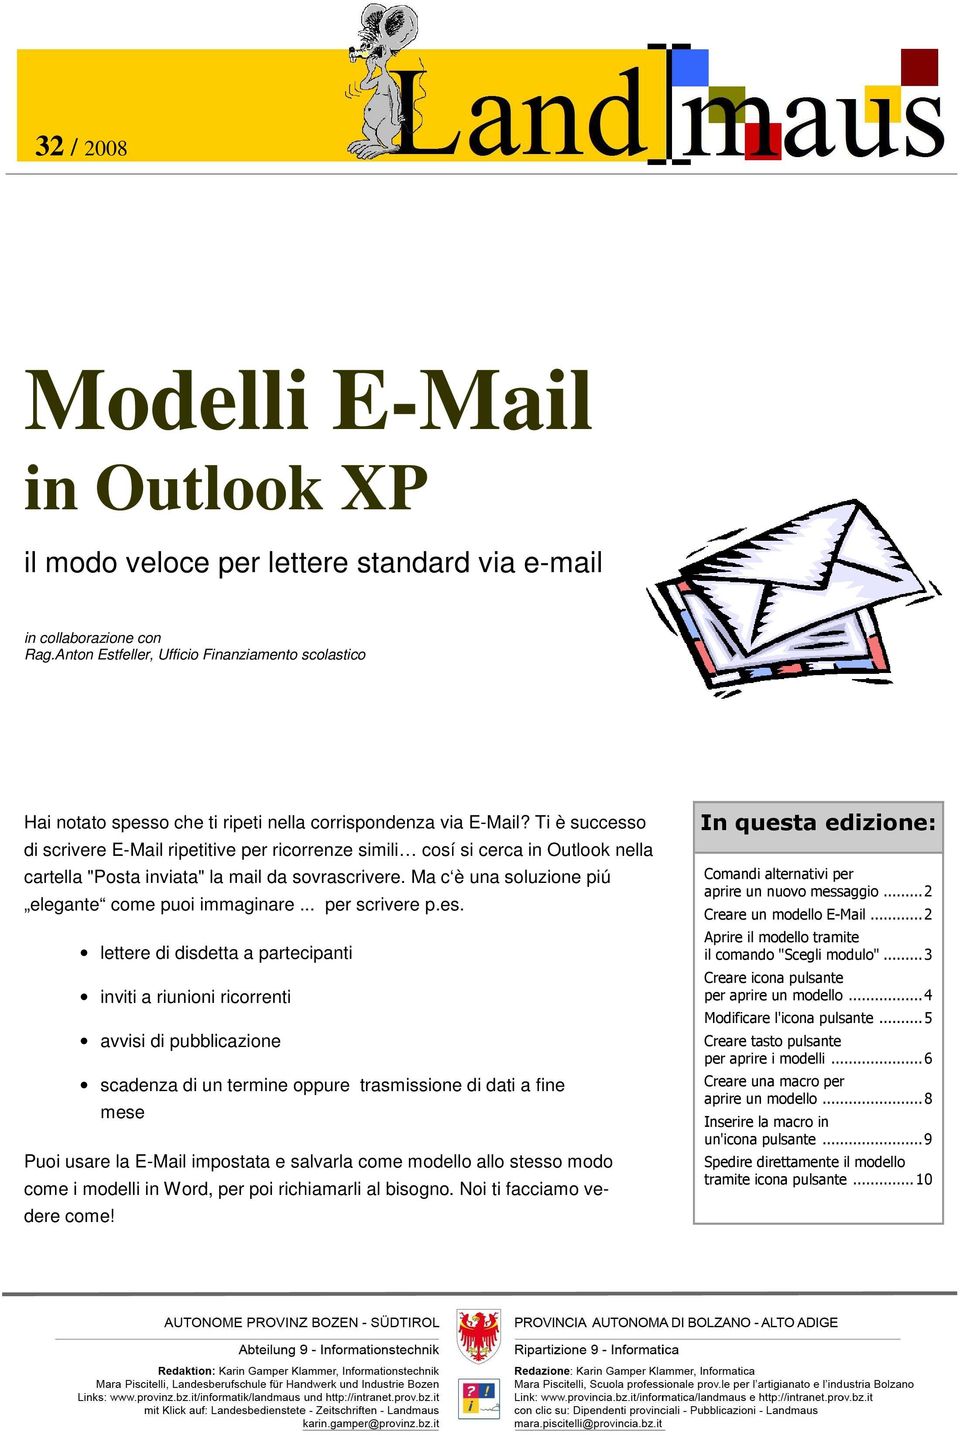 Ti è successo di scrivere E-Mail ripetitive per ricorrenze simili cosí si cerca in Outlook nella cartella "Posta inviata" la mail da sovrascrivere.